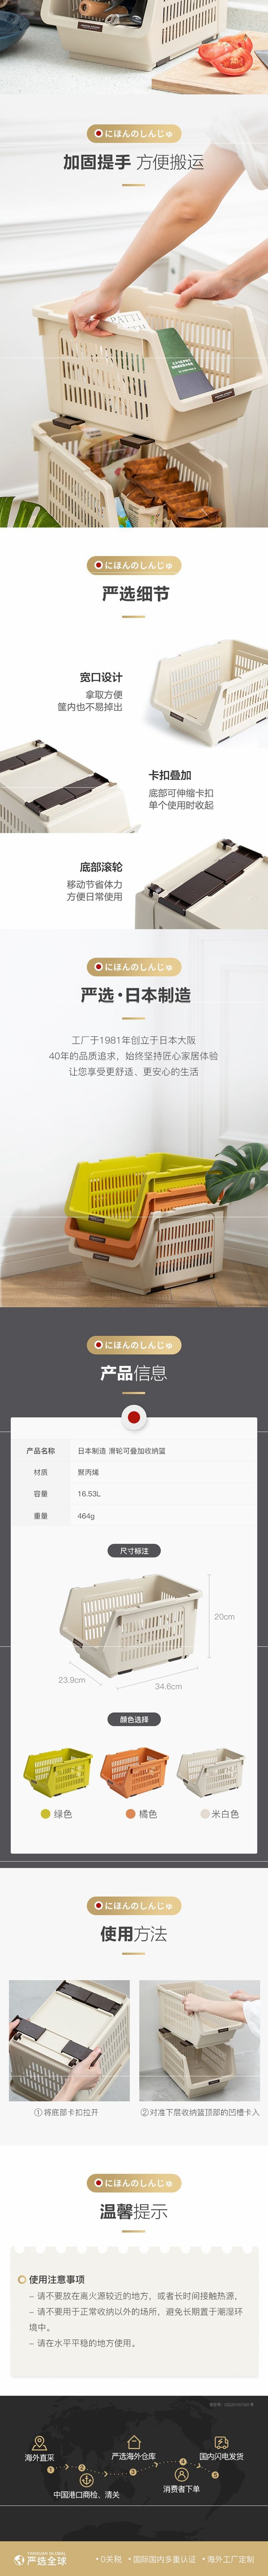 Lifease Made in Japanstackable multi-purpose storage basket orange -2 pcs